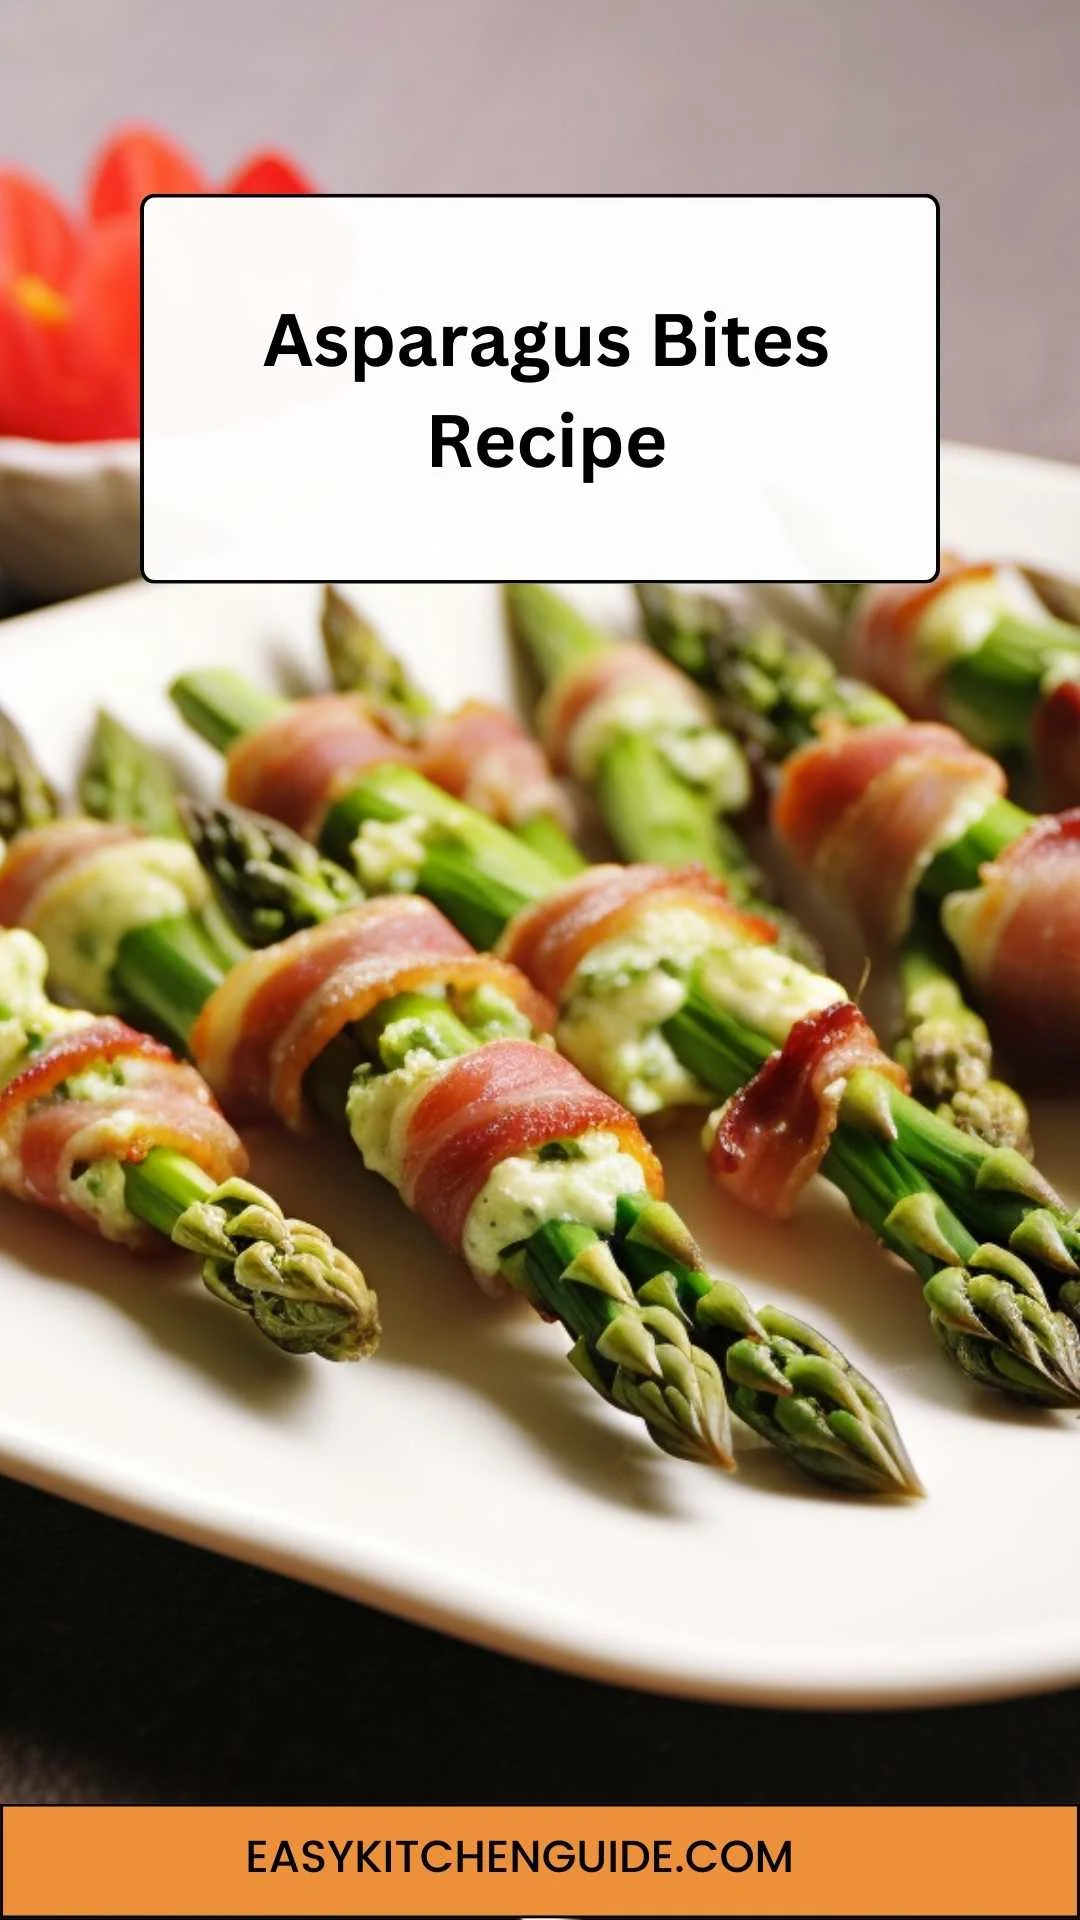 Asparagus Bites Recipe